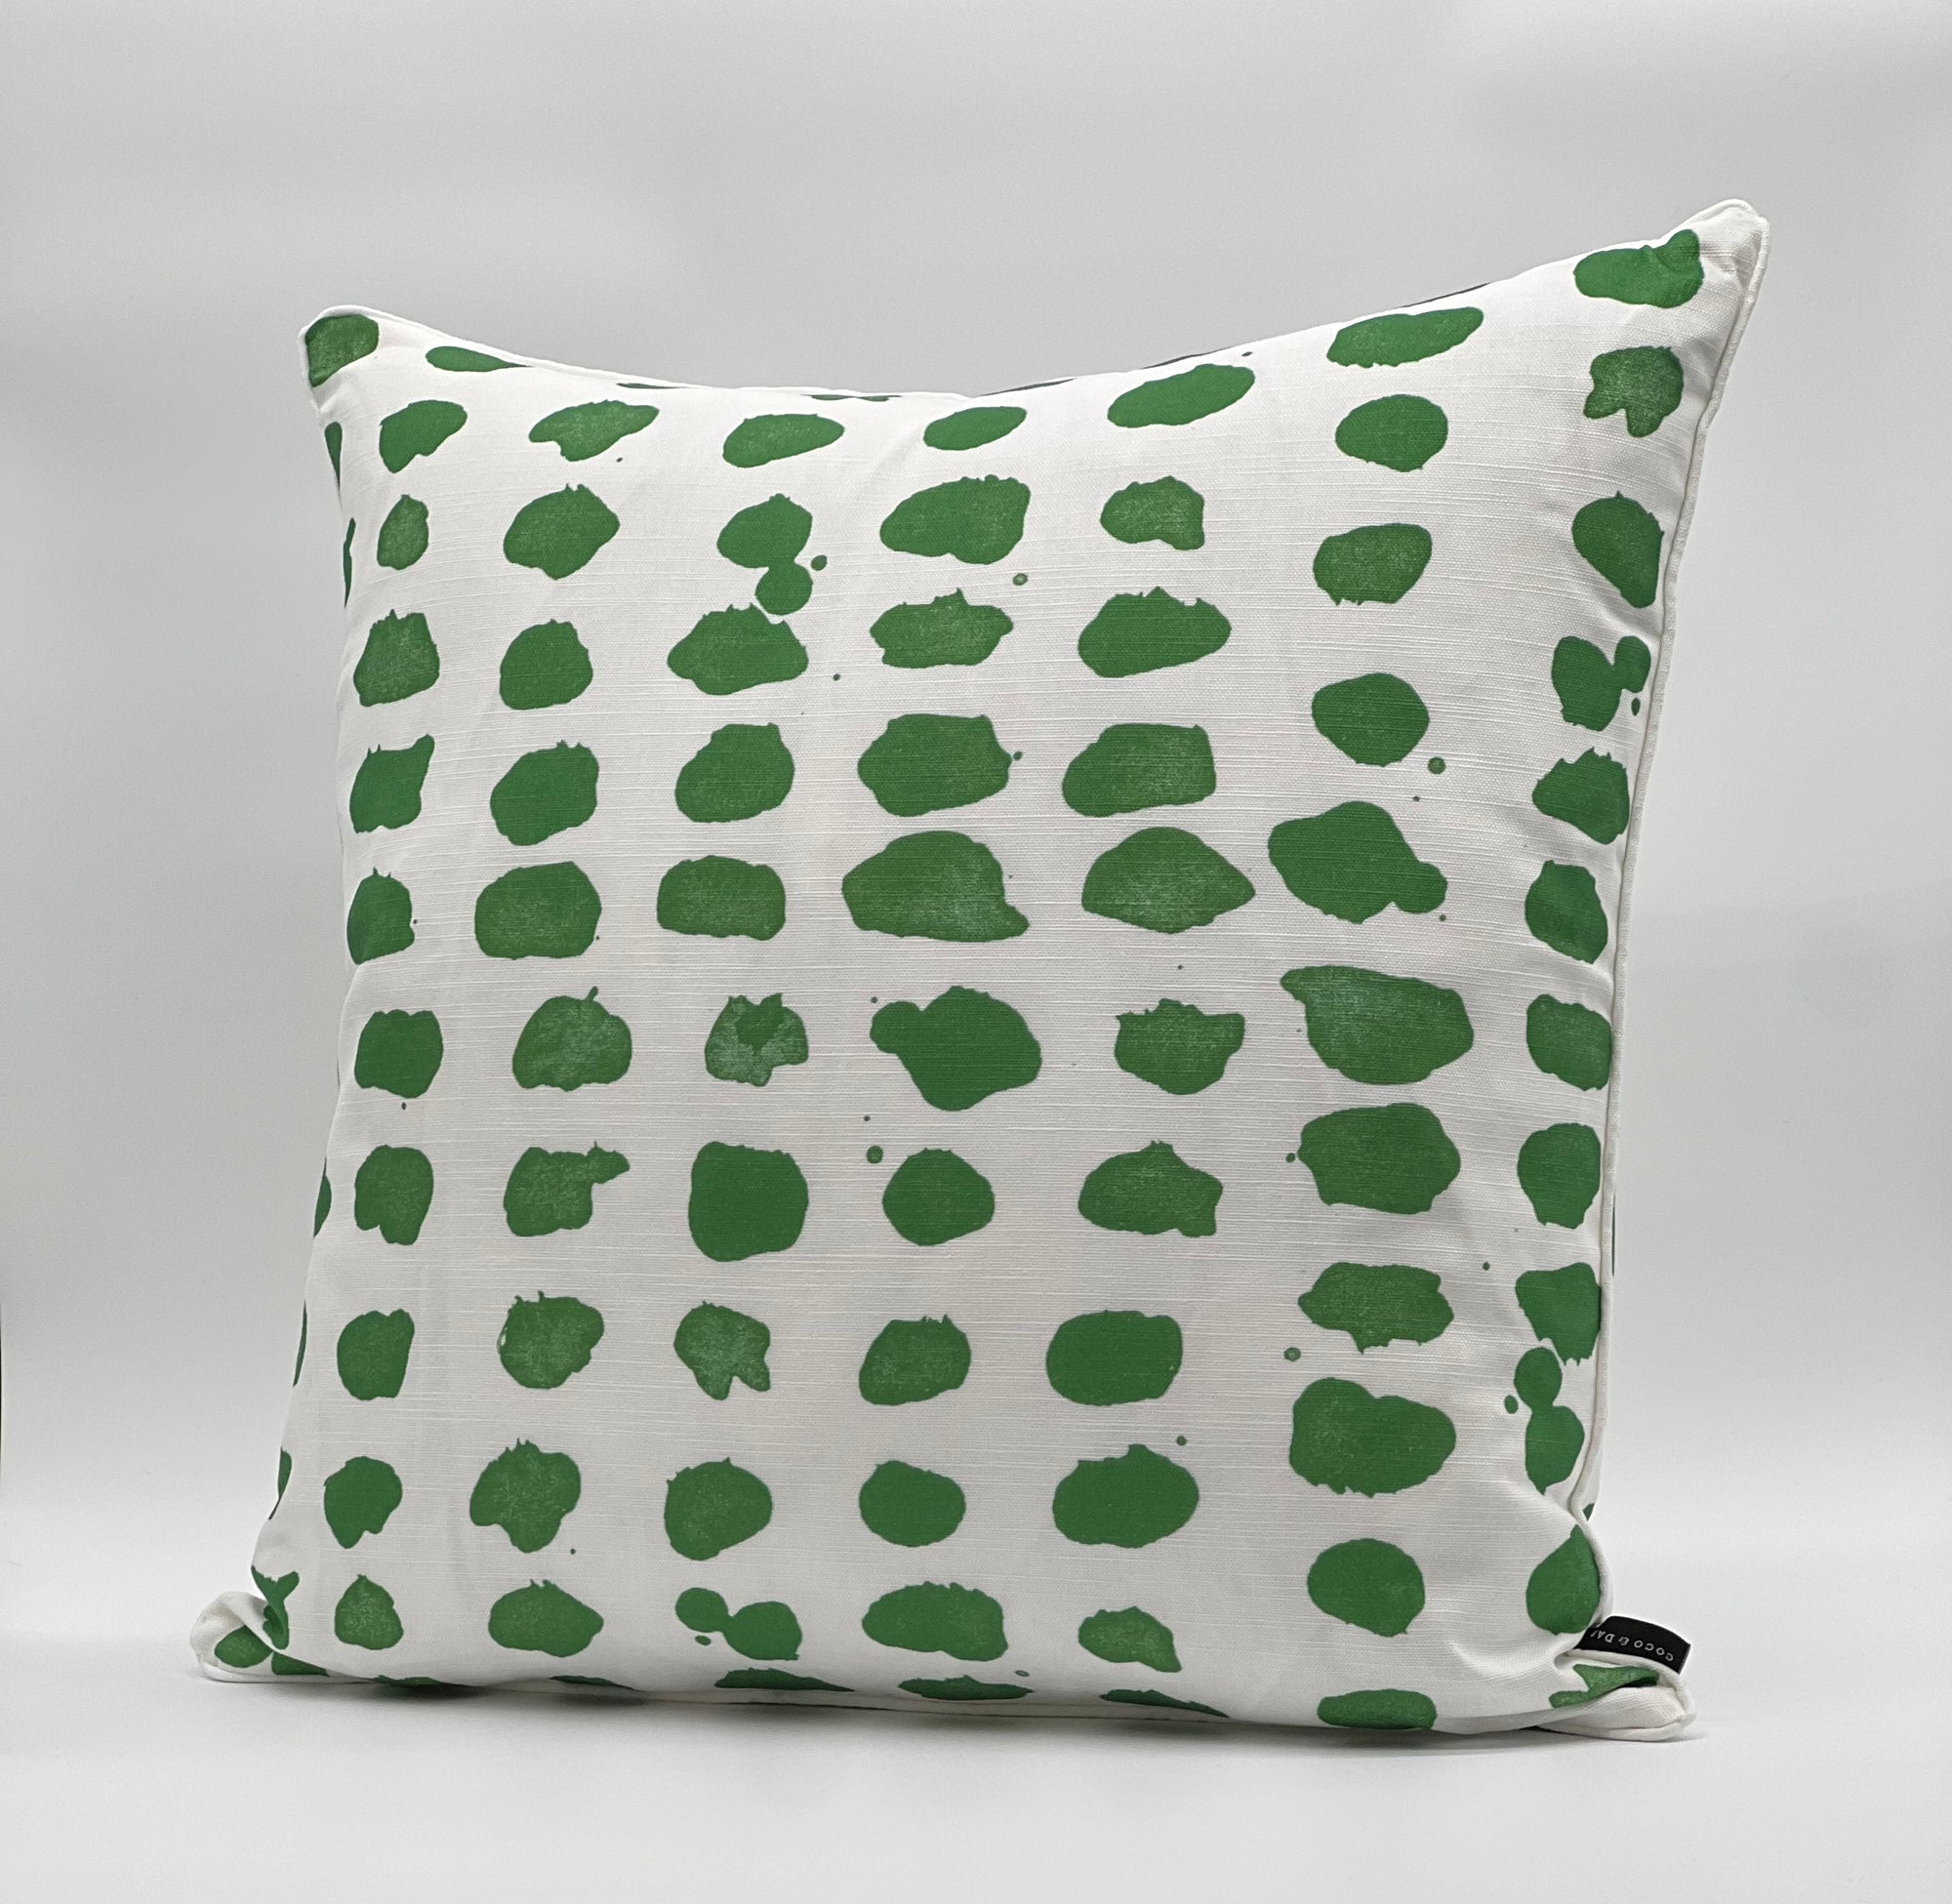 Guinea Grass green Pillow